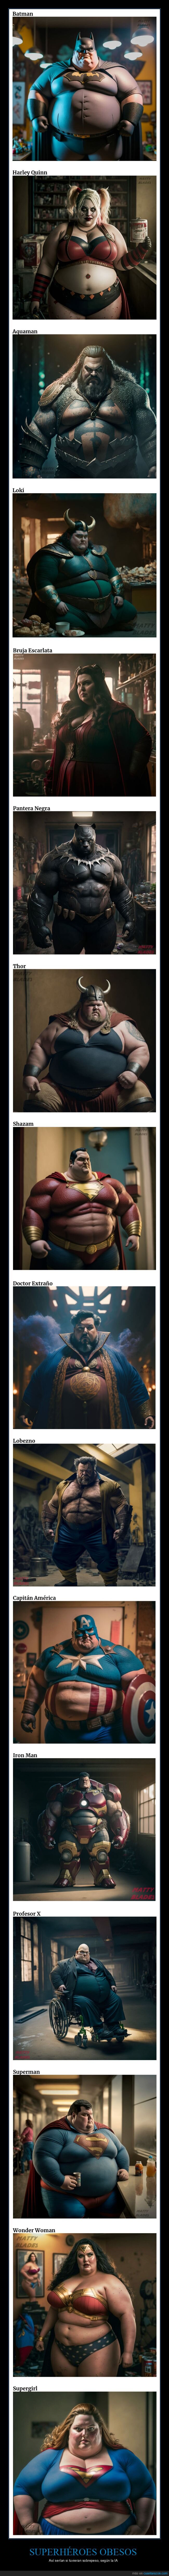 superhéroes,obesos,ia